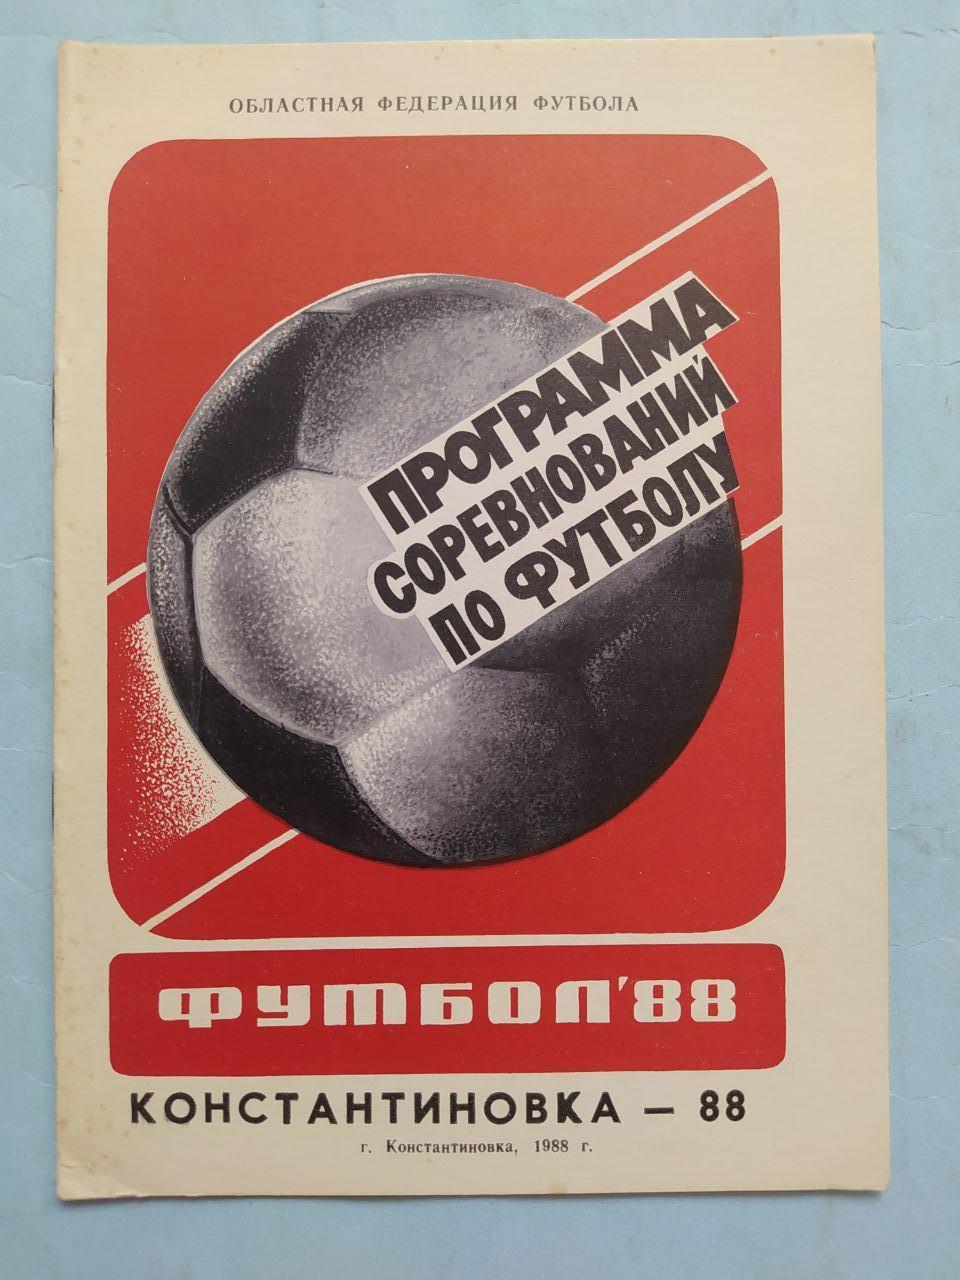 Программа соревнований по футболу Константиновка 1988 г.